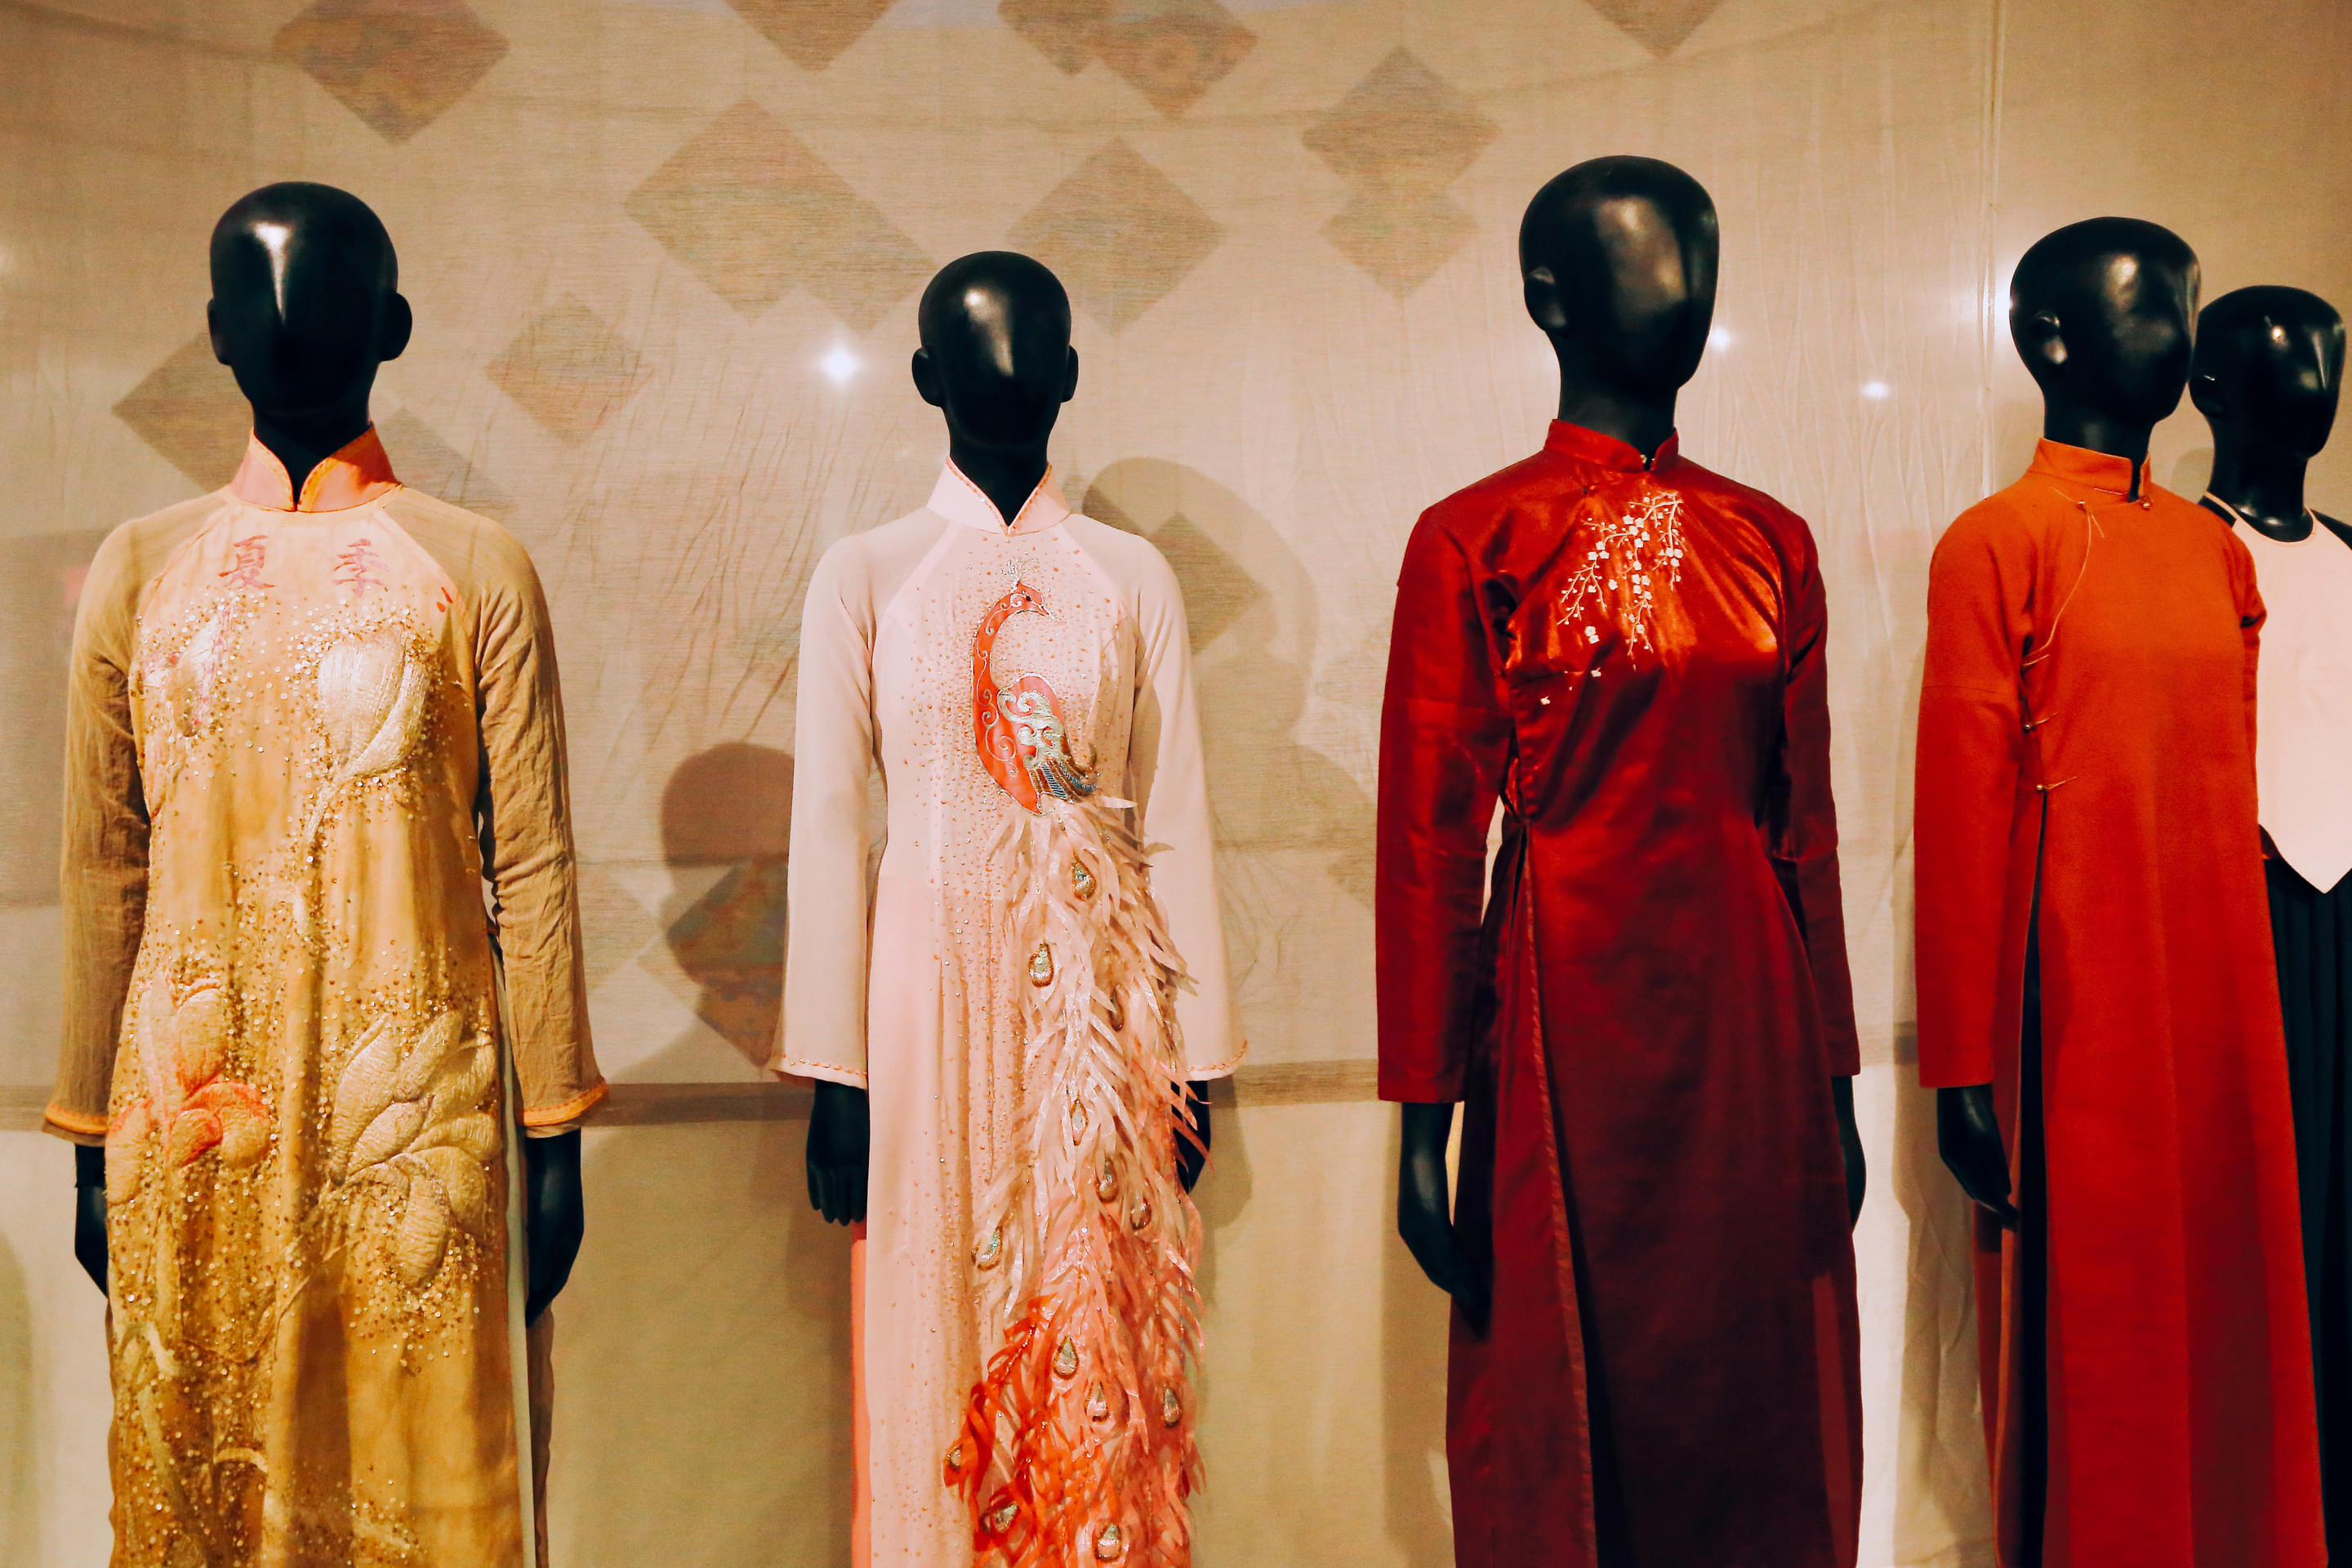 Vietnamese Women's Museum Overview